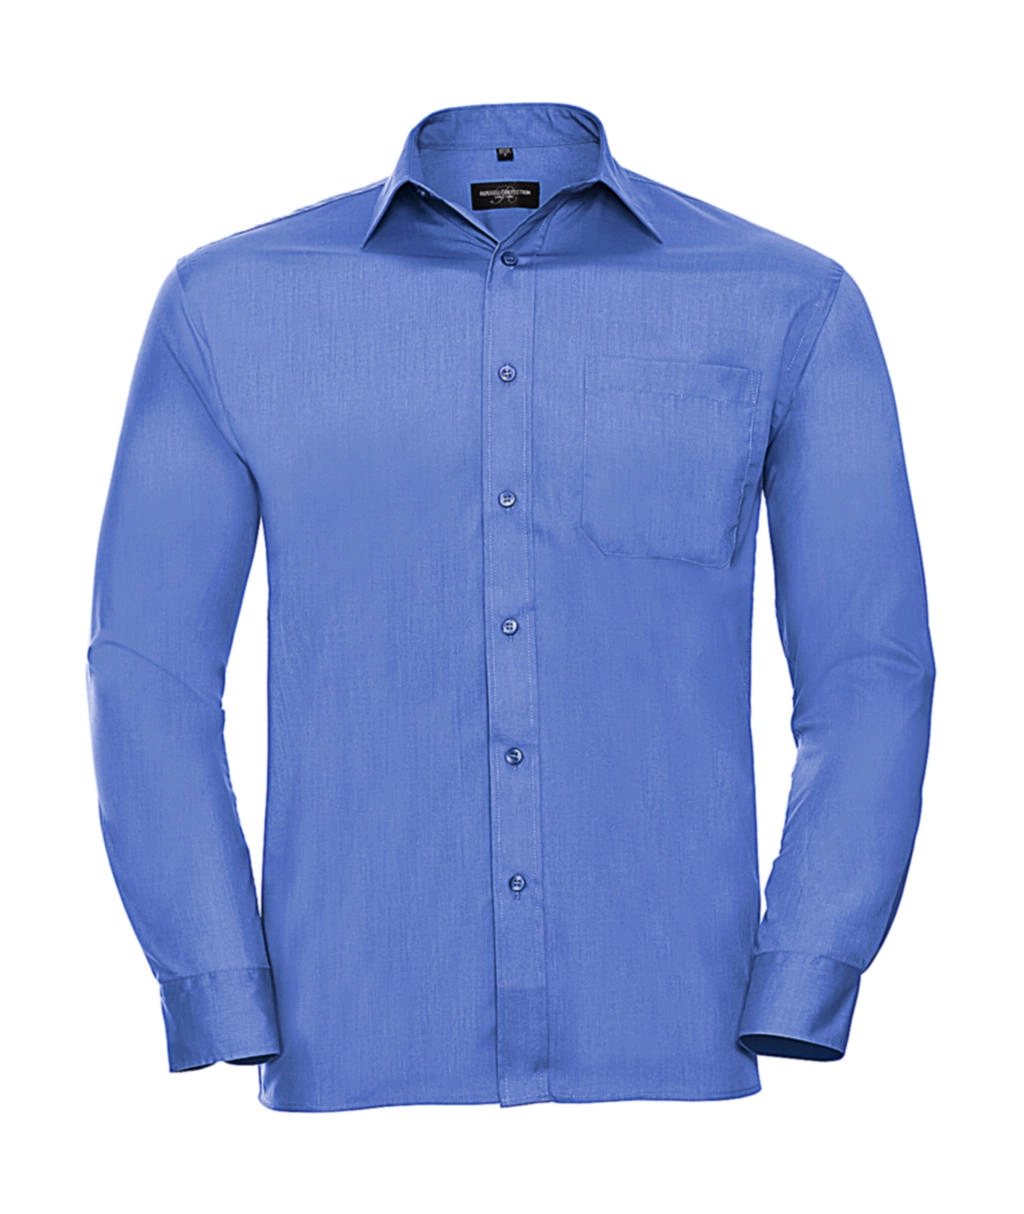 Poplin Shirt LS zum Besticken und Bedrucken in der Farbe Corporate Blue mit Ihren Logo, Schriftzug oder Motiv.